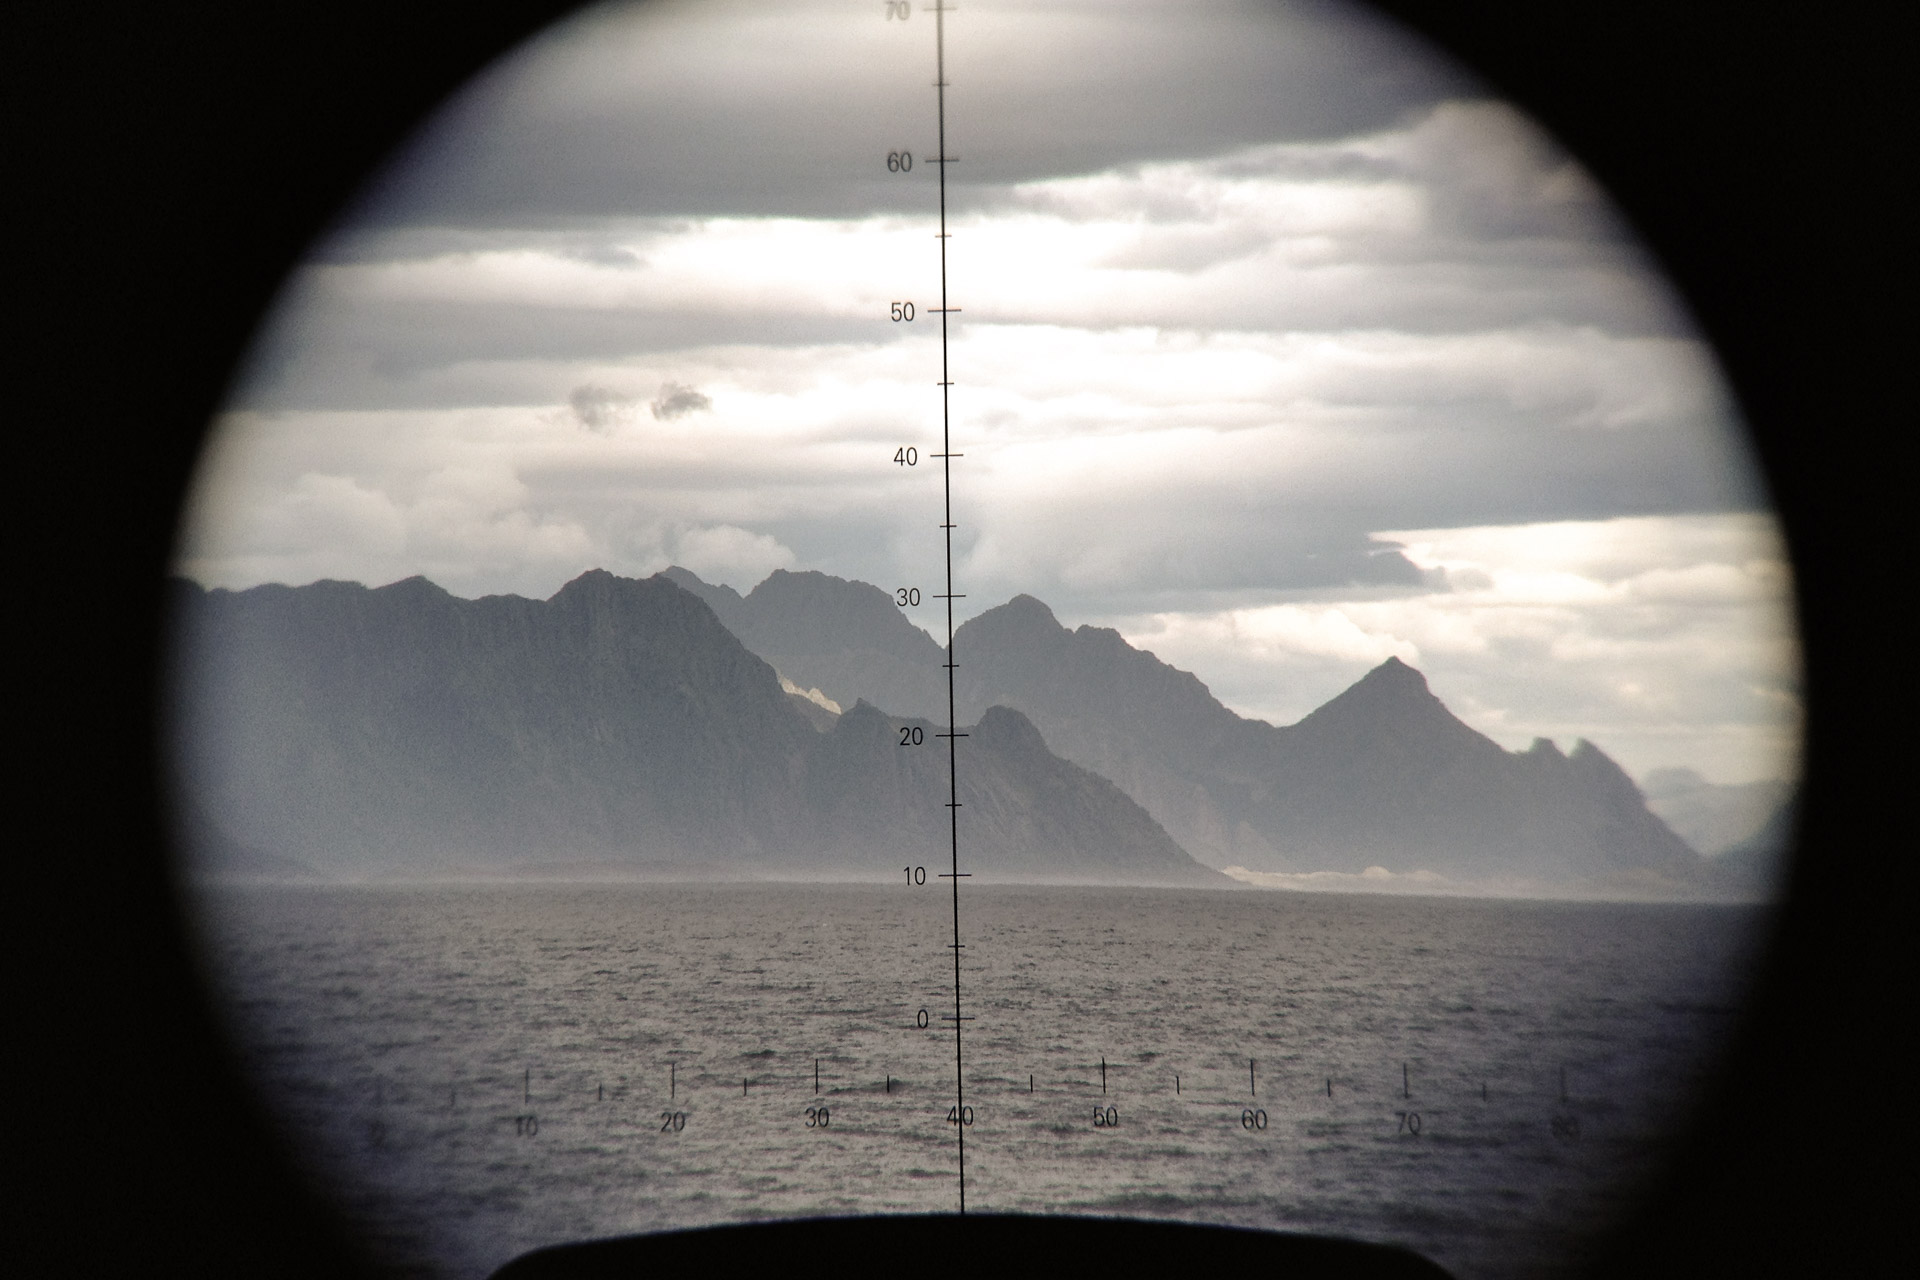 Mountains of Lofoten through binoculars